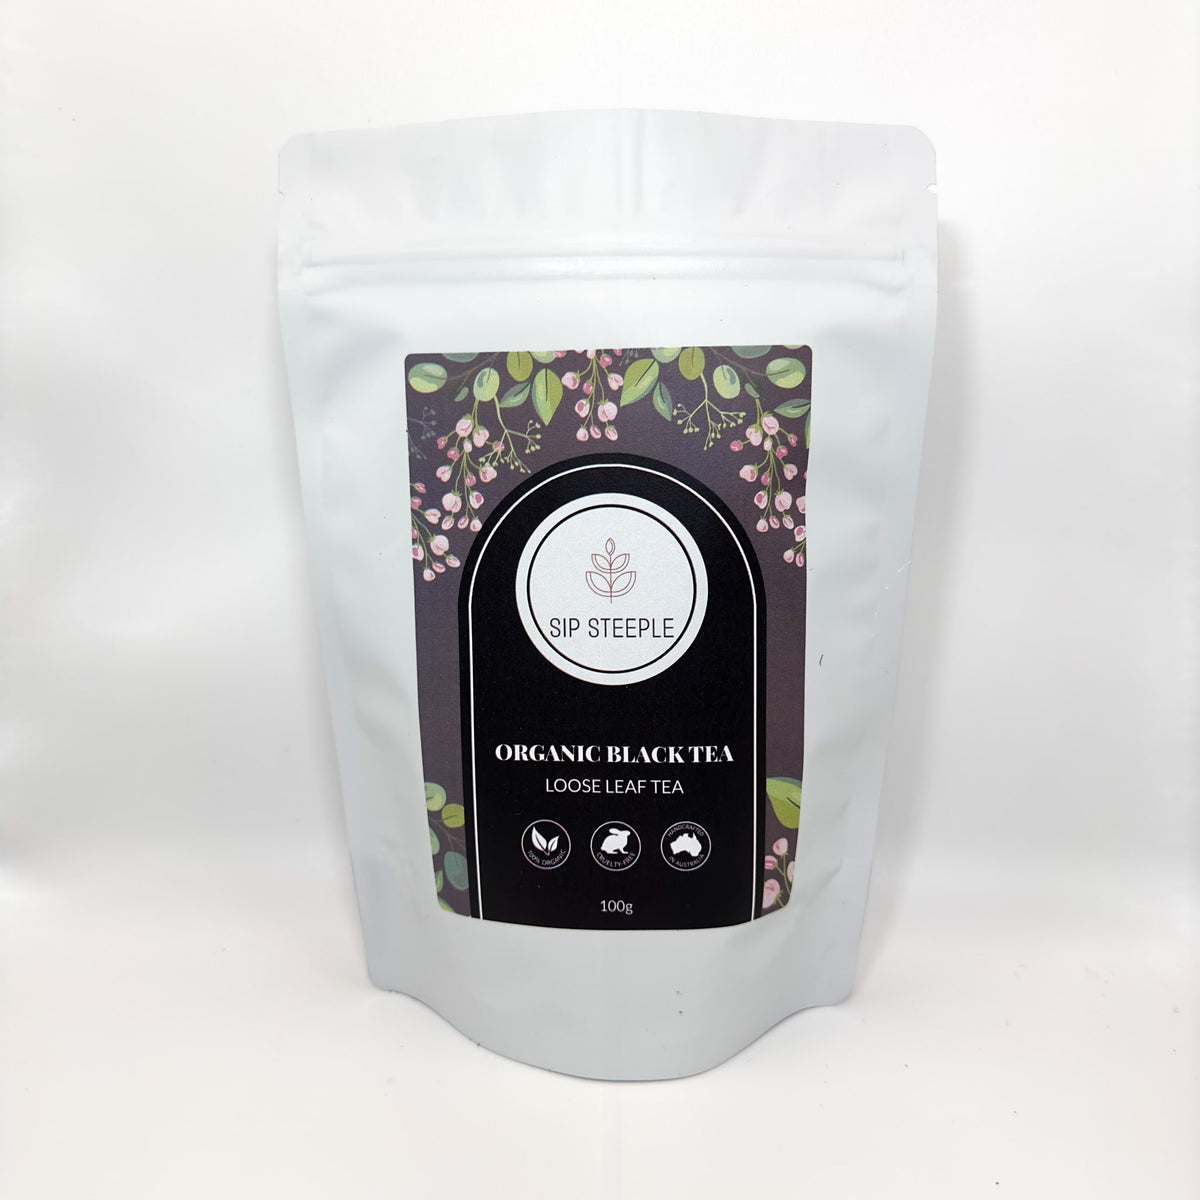 Sip Steeple Organic Black Tea Packaging